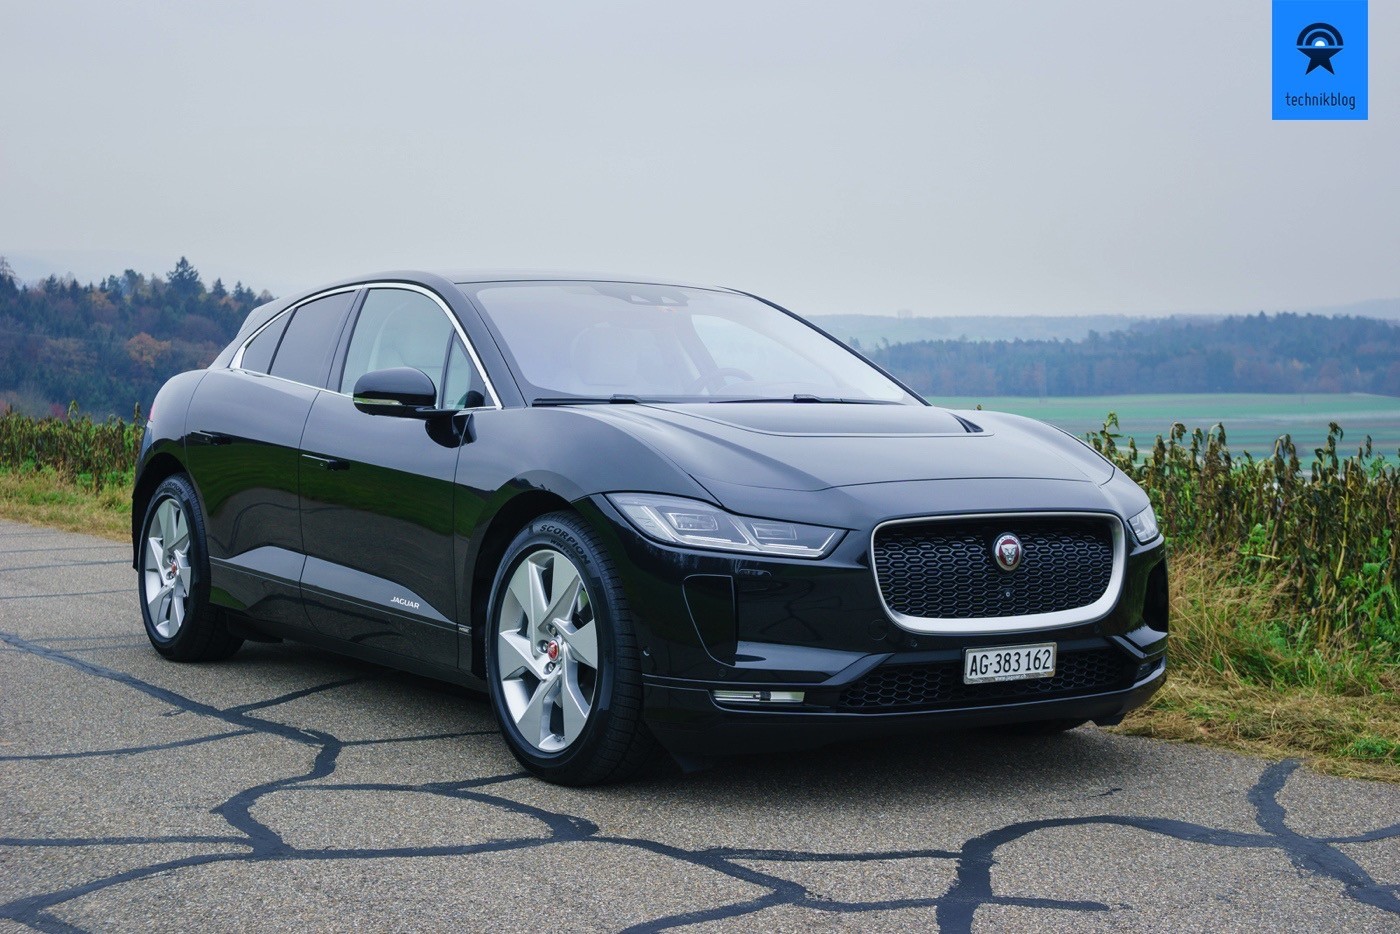 Jaguar I-Pace Review im Technikblog